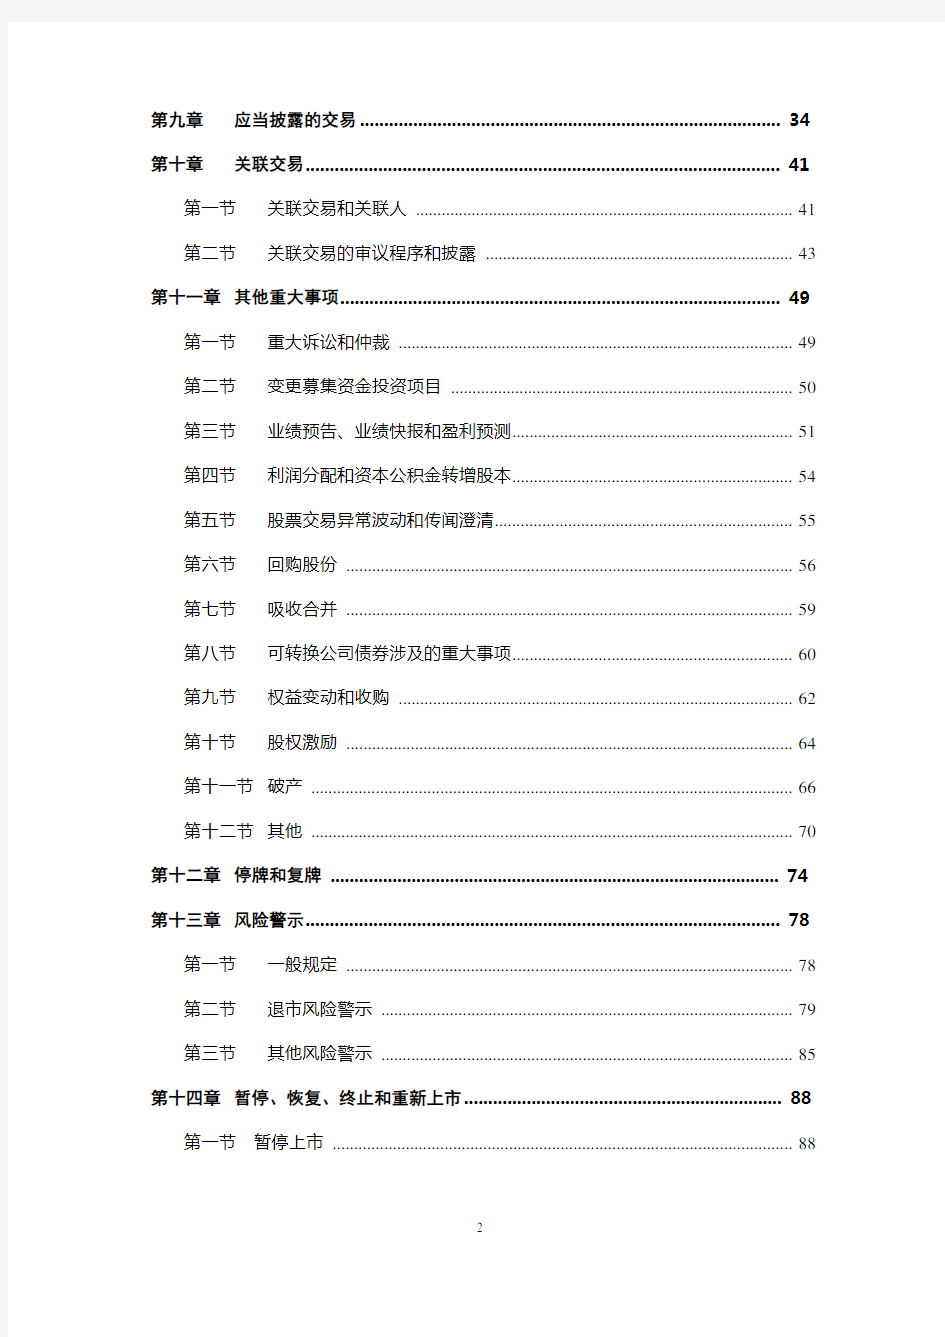 上海证券交易所股票上市规则解读(2018年修订)